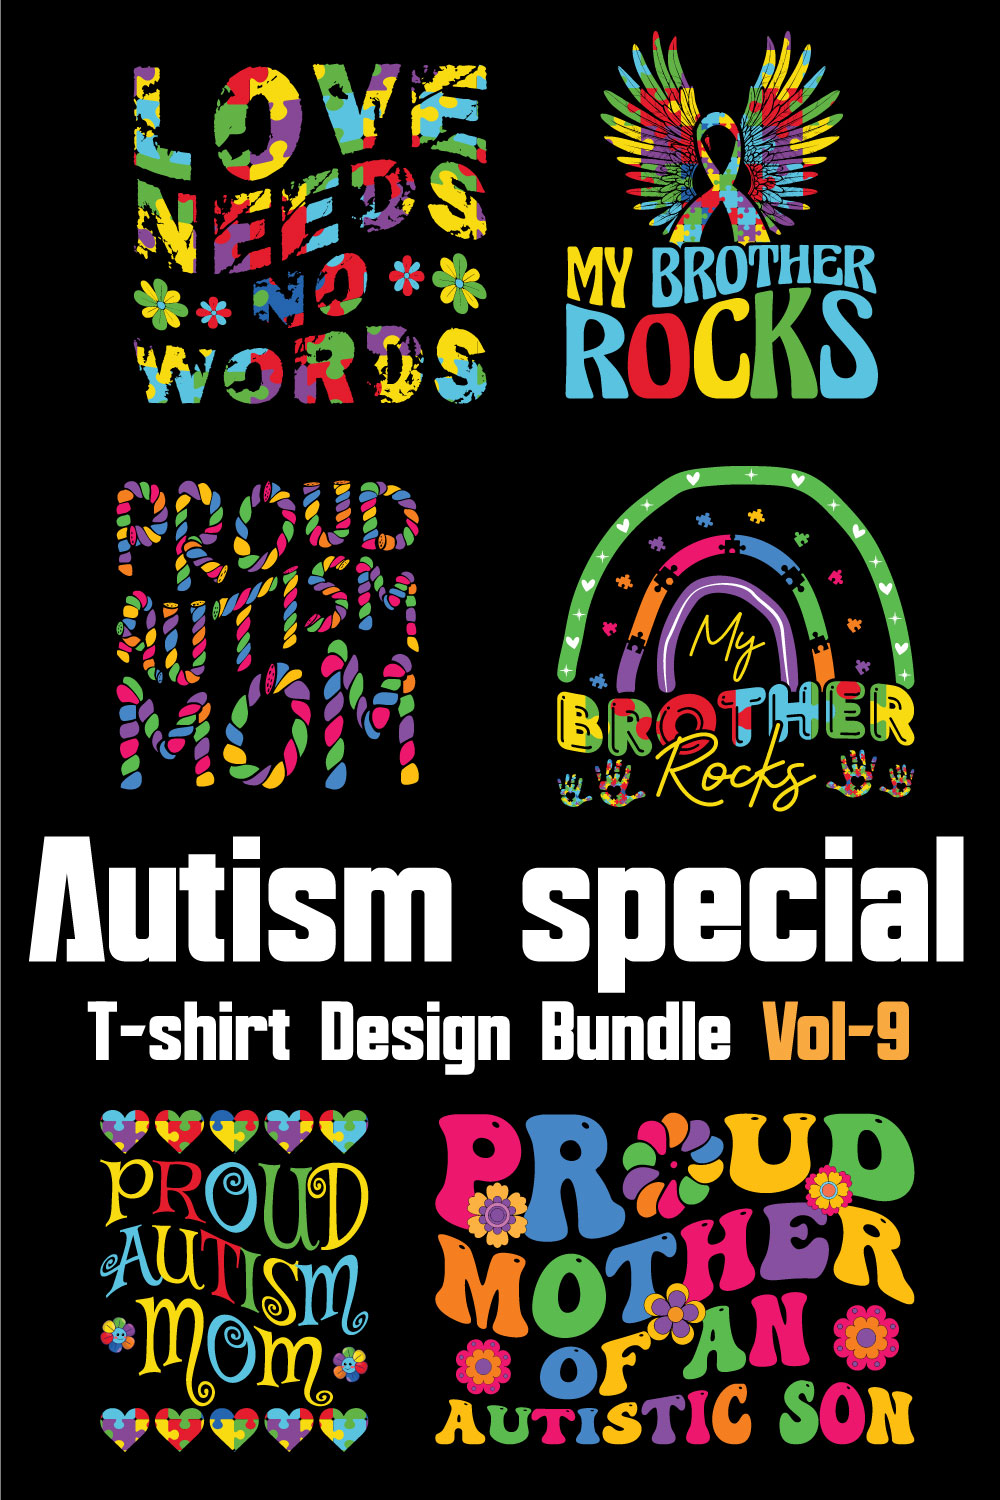 Autism Special T-shirt Design Bundle Vol-9 pinterest preview image.